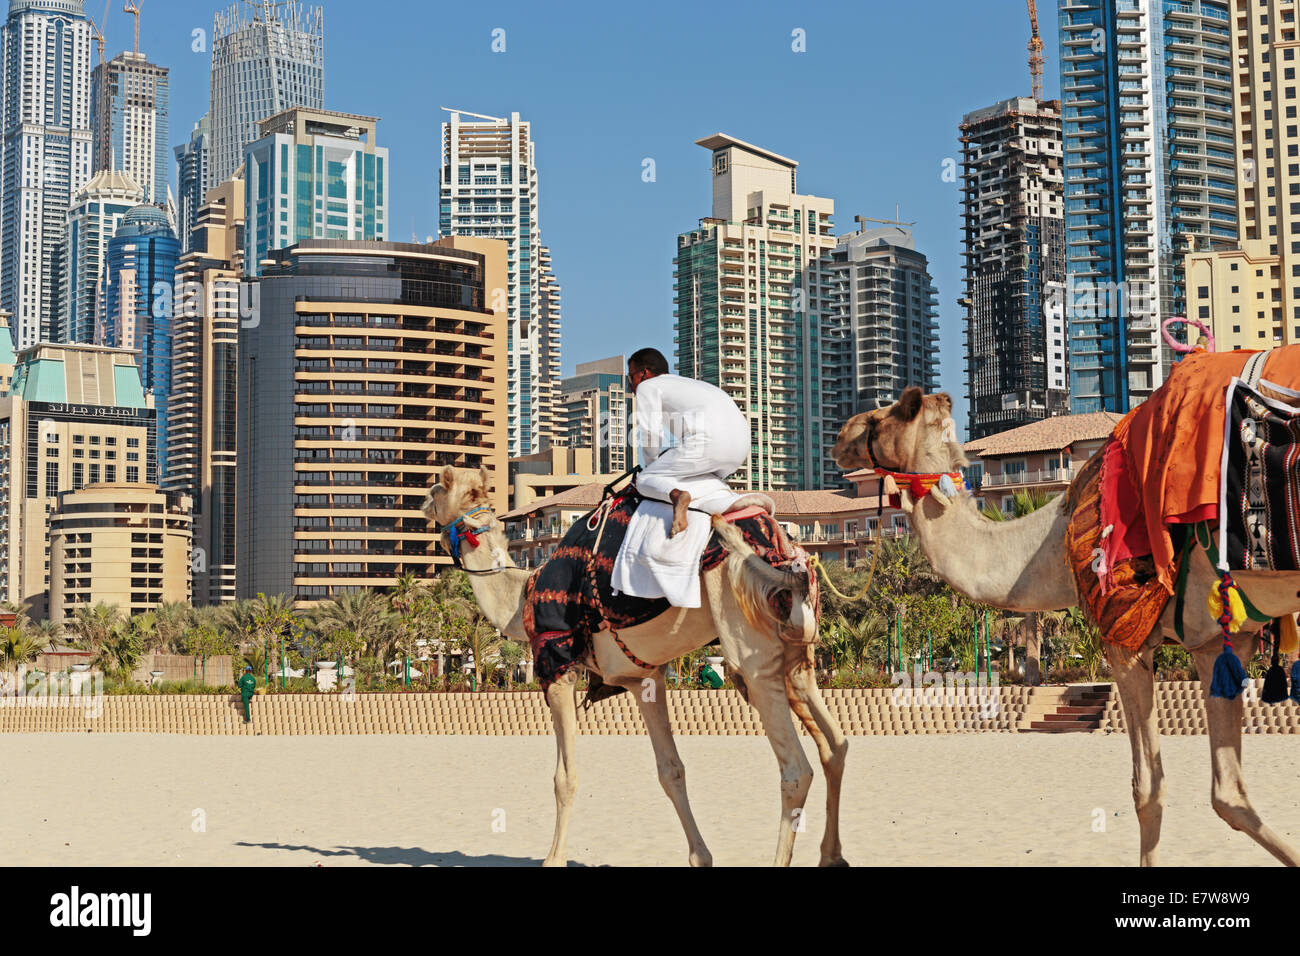 DUBAI, UAE - NOVEMBER 11: High rise buildings and camel on the beach in Dubai Marina, on November 11, 2013, Dubai, UAE. In the c Stock Photo